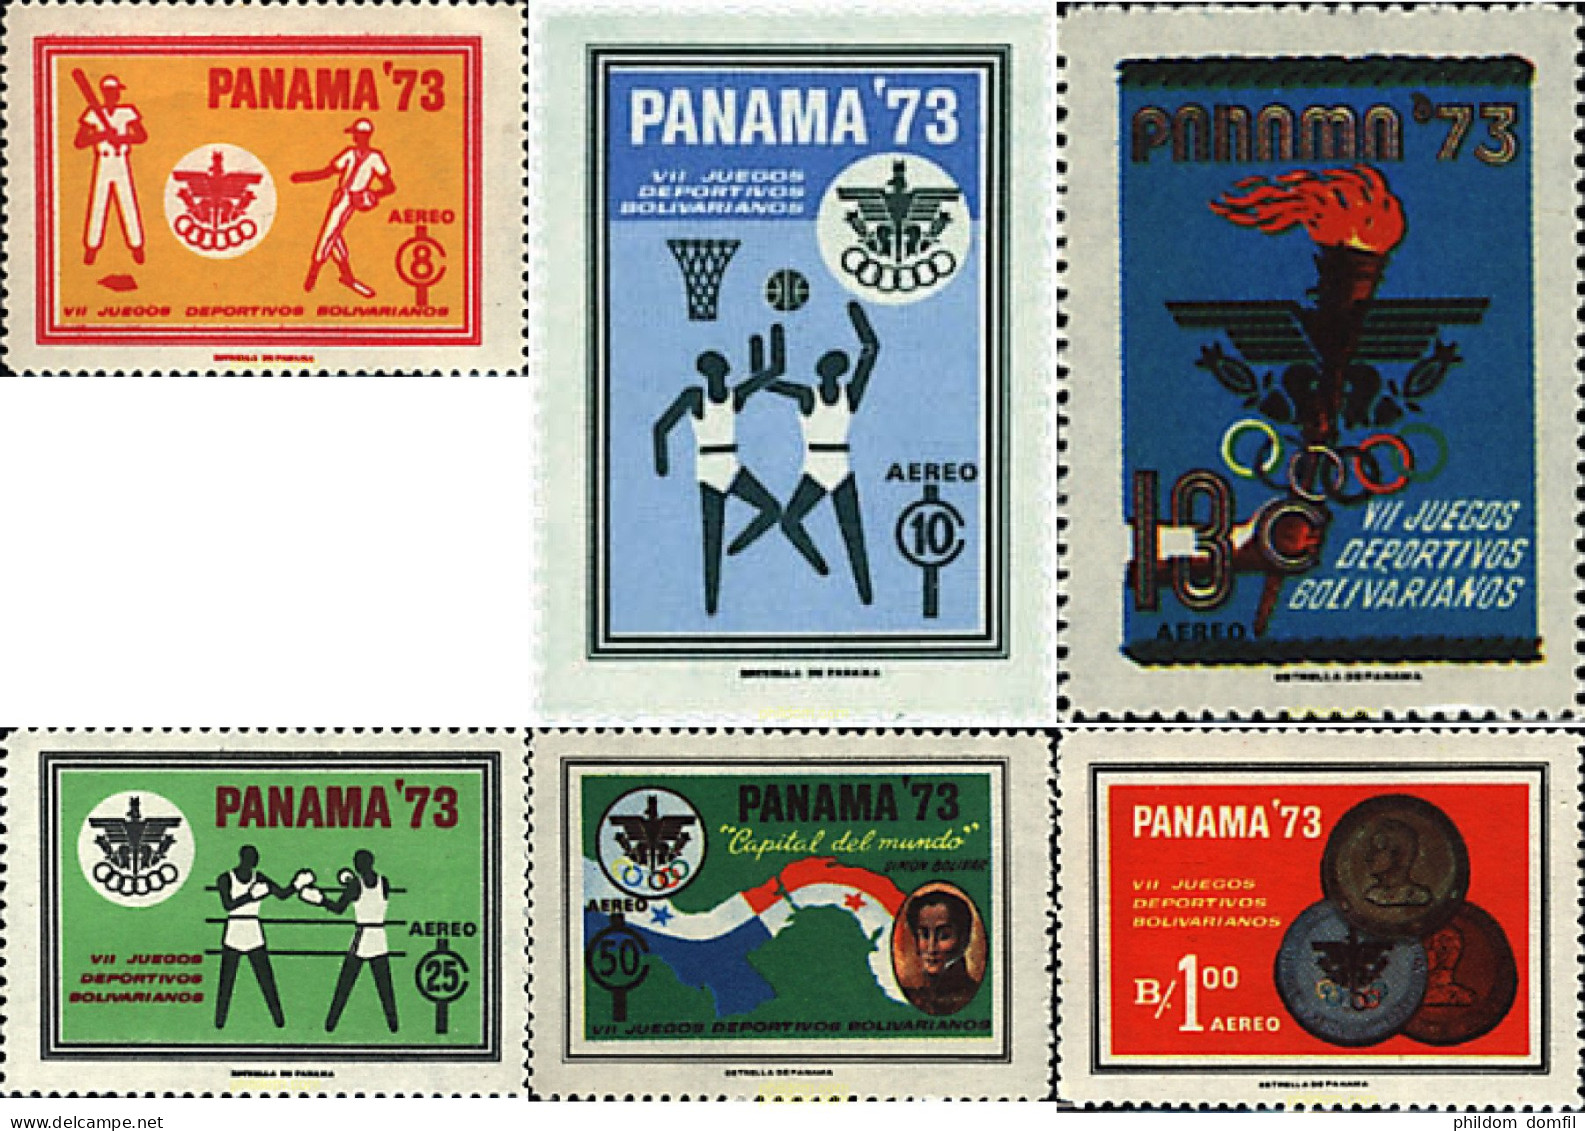 52510 MNH PANAMA 1973 7 JUEGOS DEPORTIVOS BOLIVARIANOS - Panama